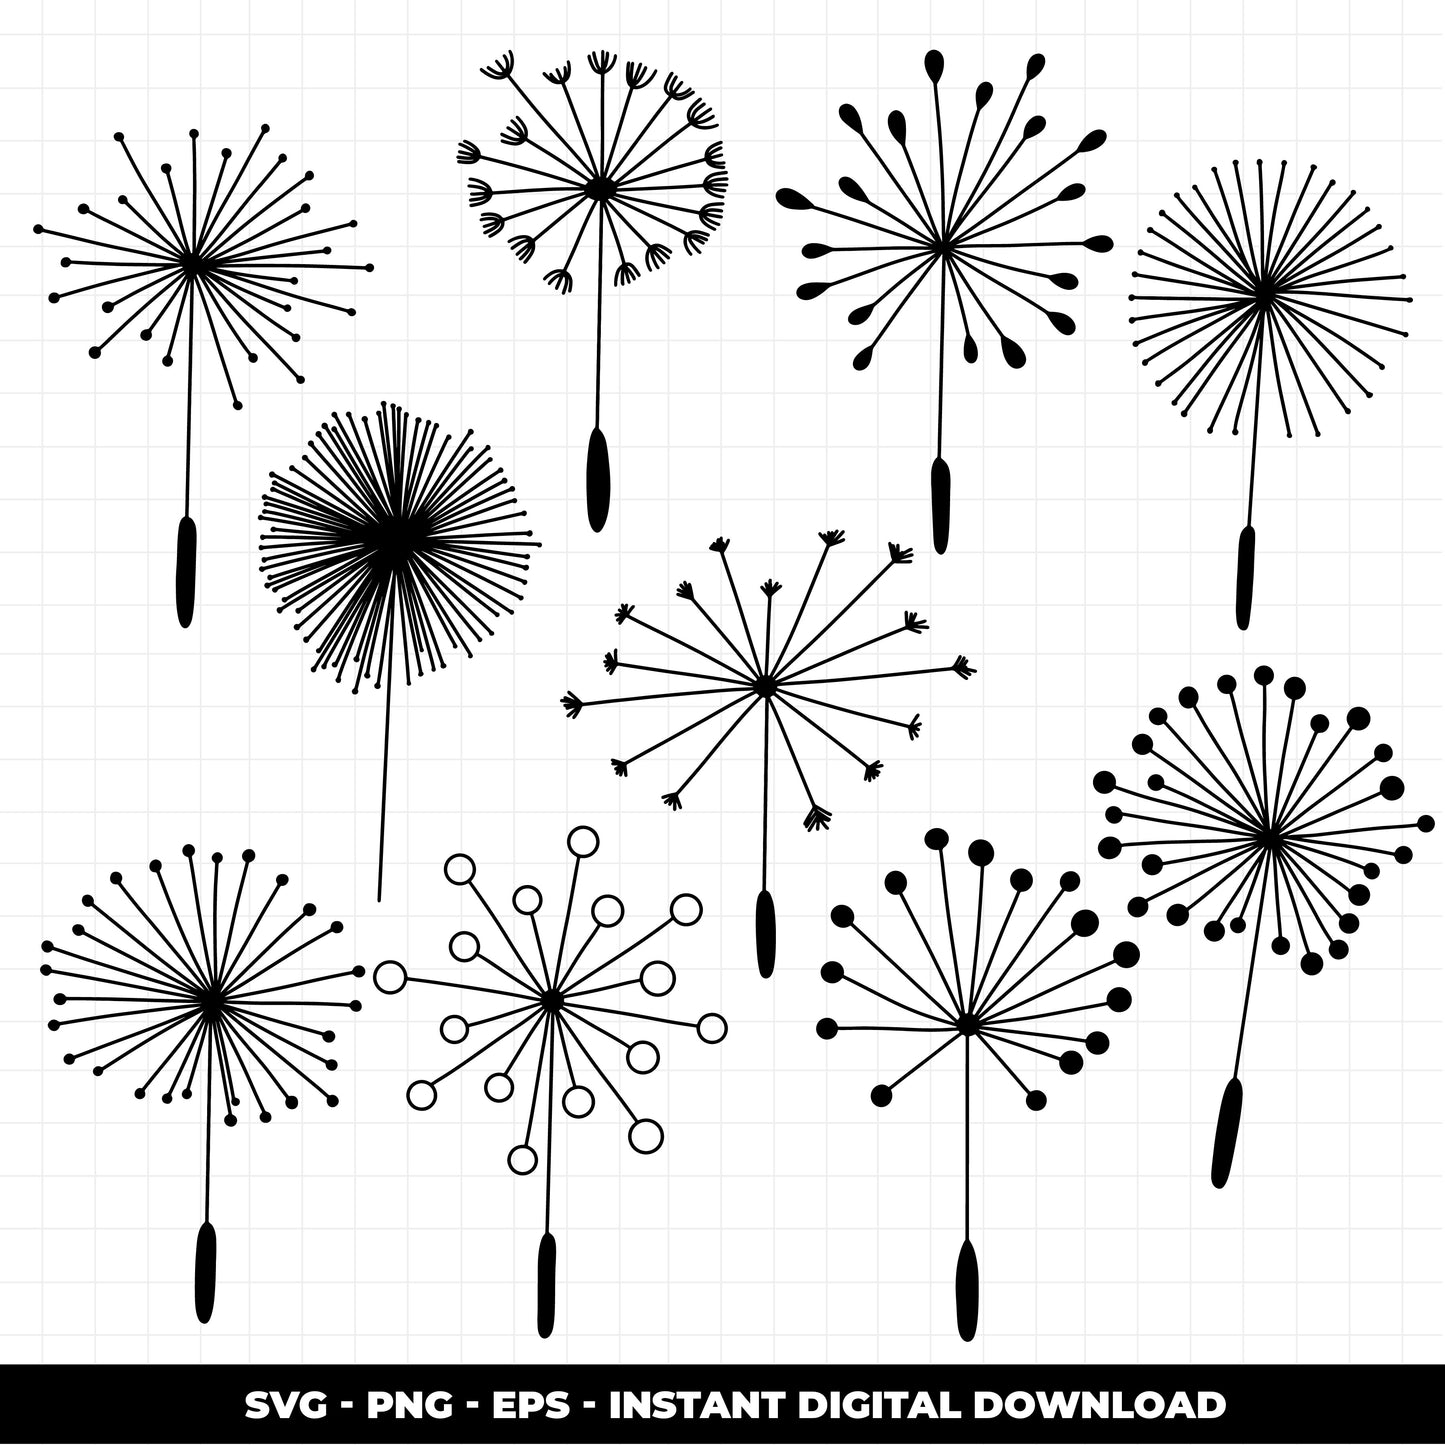 COD1382 - Doodle clipart, Dandelion Clipart, leaves Clipart, autumn leaves printable, scrapbook cliparts, Instant Download